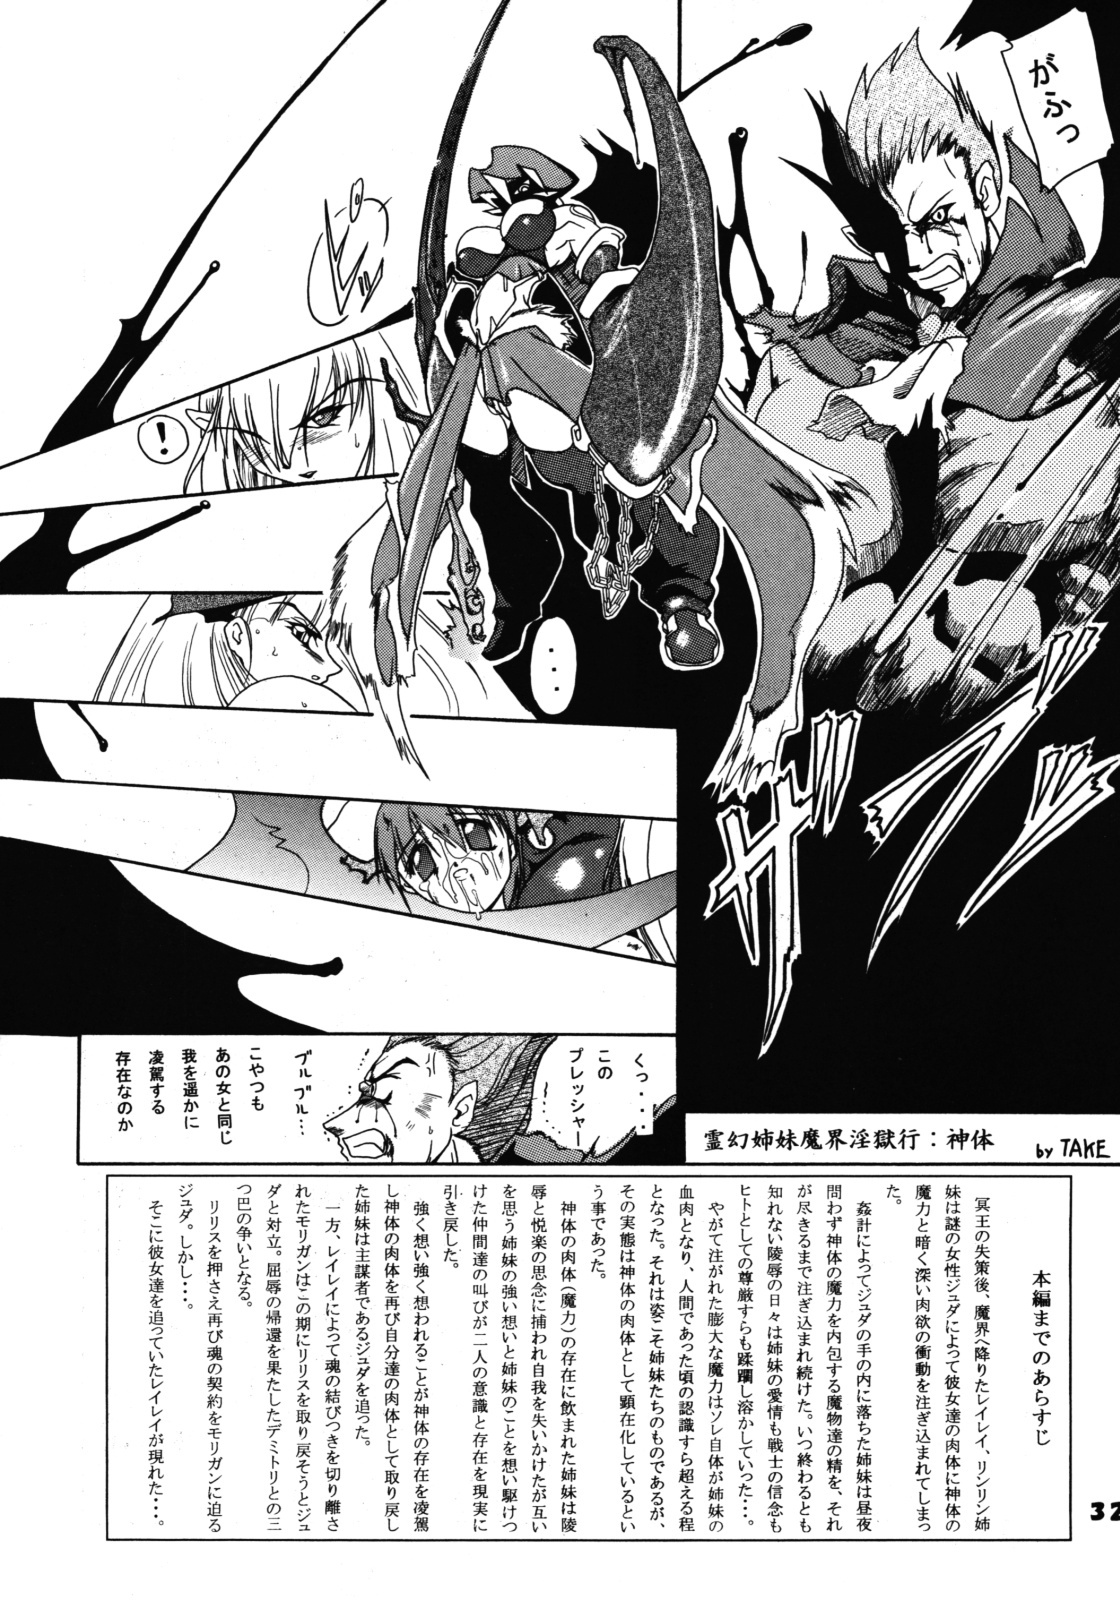 (SC24) [Furuya (Take)] Kakugee Zanmai 4 (Darkstalkers, SoulCalibur) page 31 full